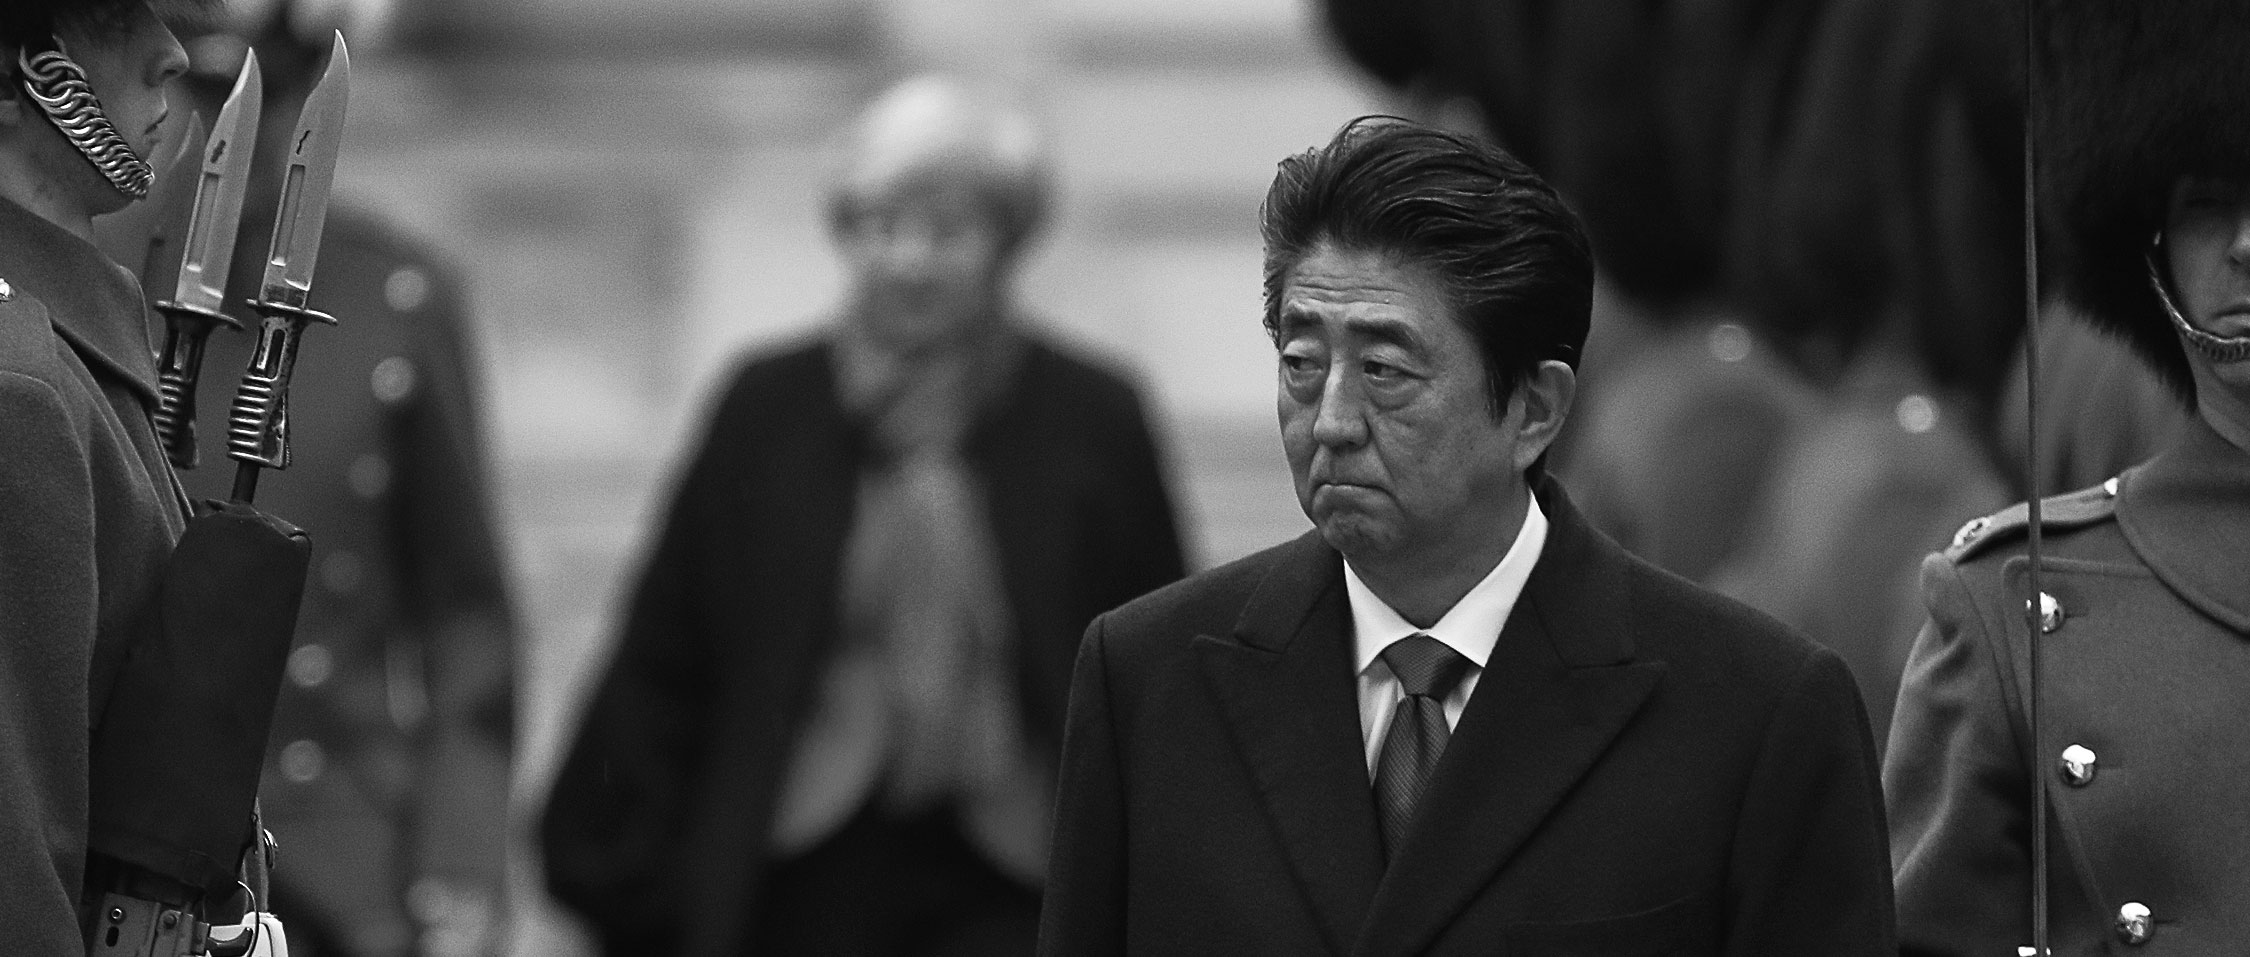 Shinzo Abe Assassinated